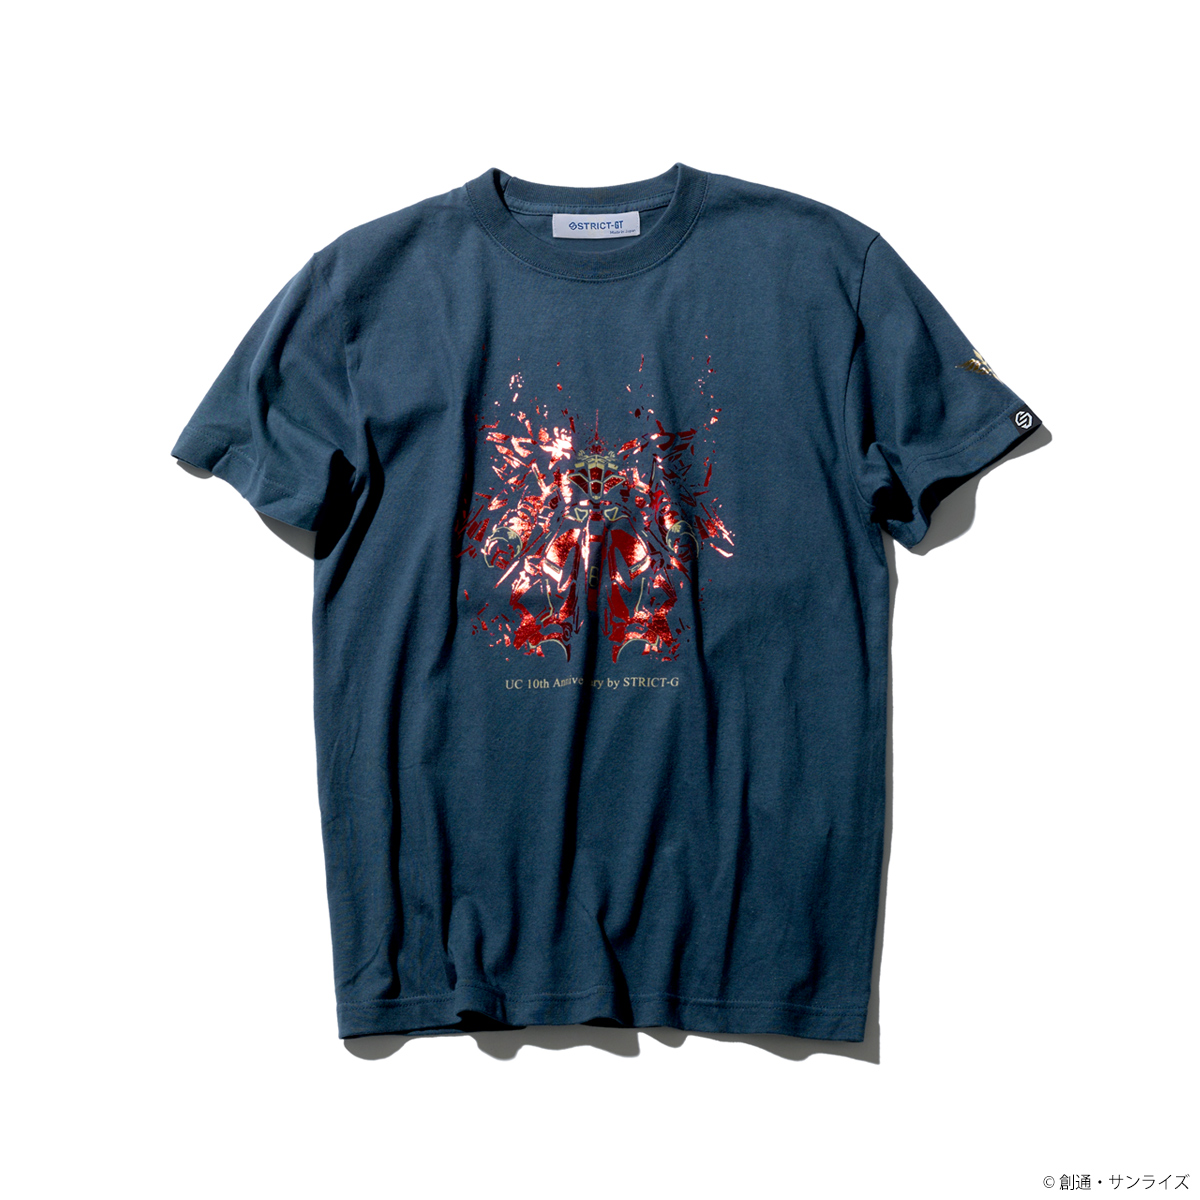 STRICT-G『機動戦士ガンダムUC』 OVA10周年記念 Tシャツ シナンジュ柄